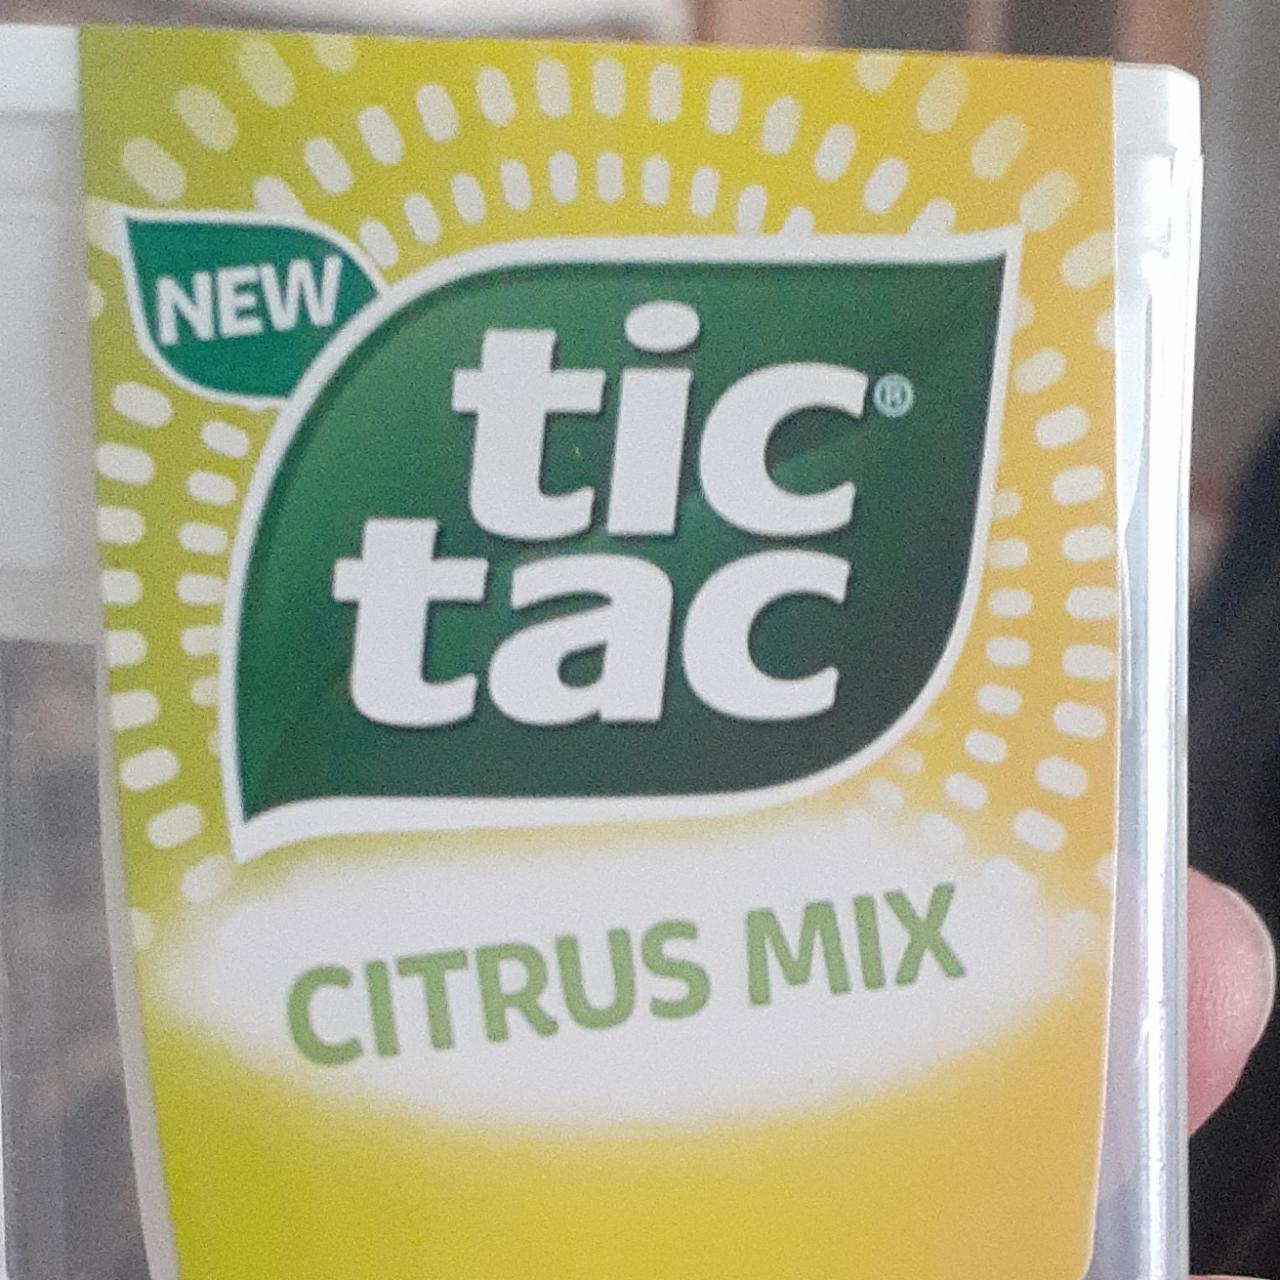 Fotografie - citrus mix Tic Tac